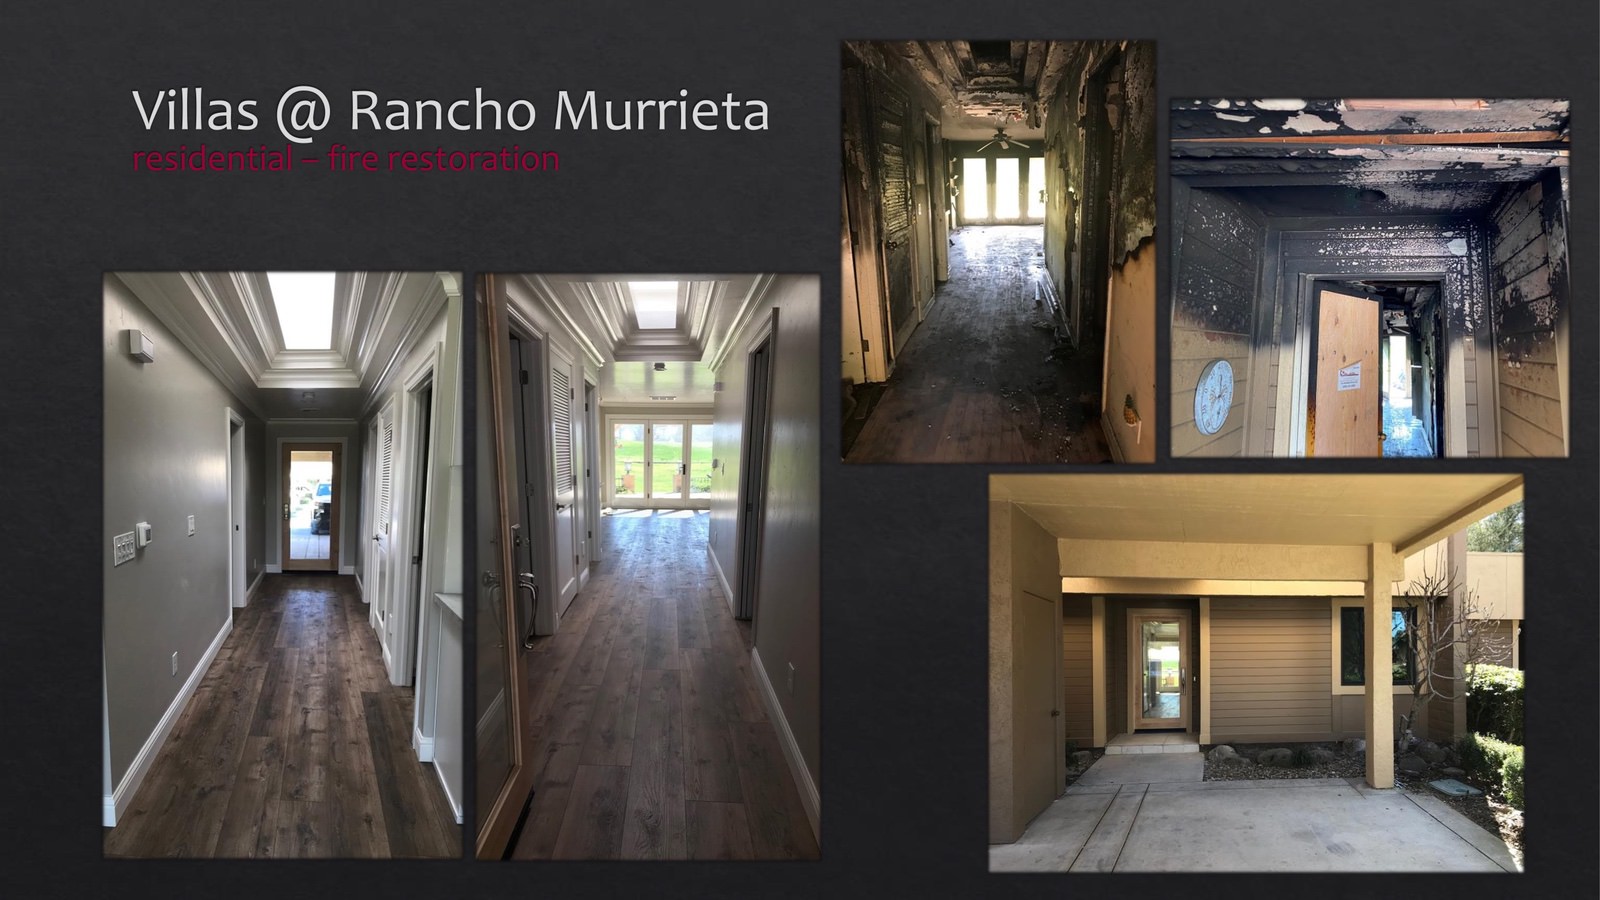 Rancho Murrieta Villas Residential fire restoration - entryway - lightbox